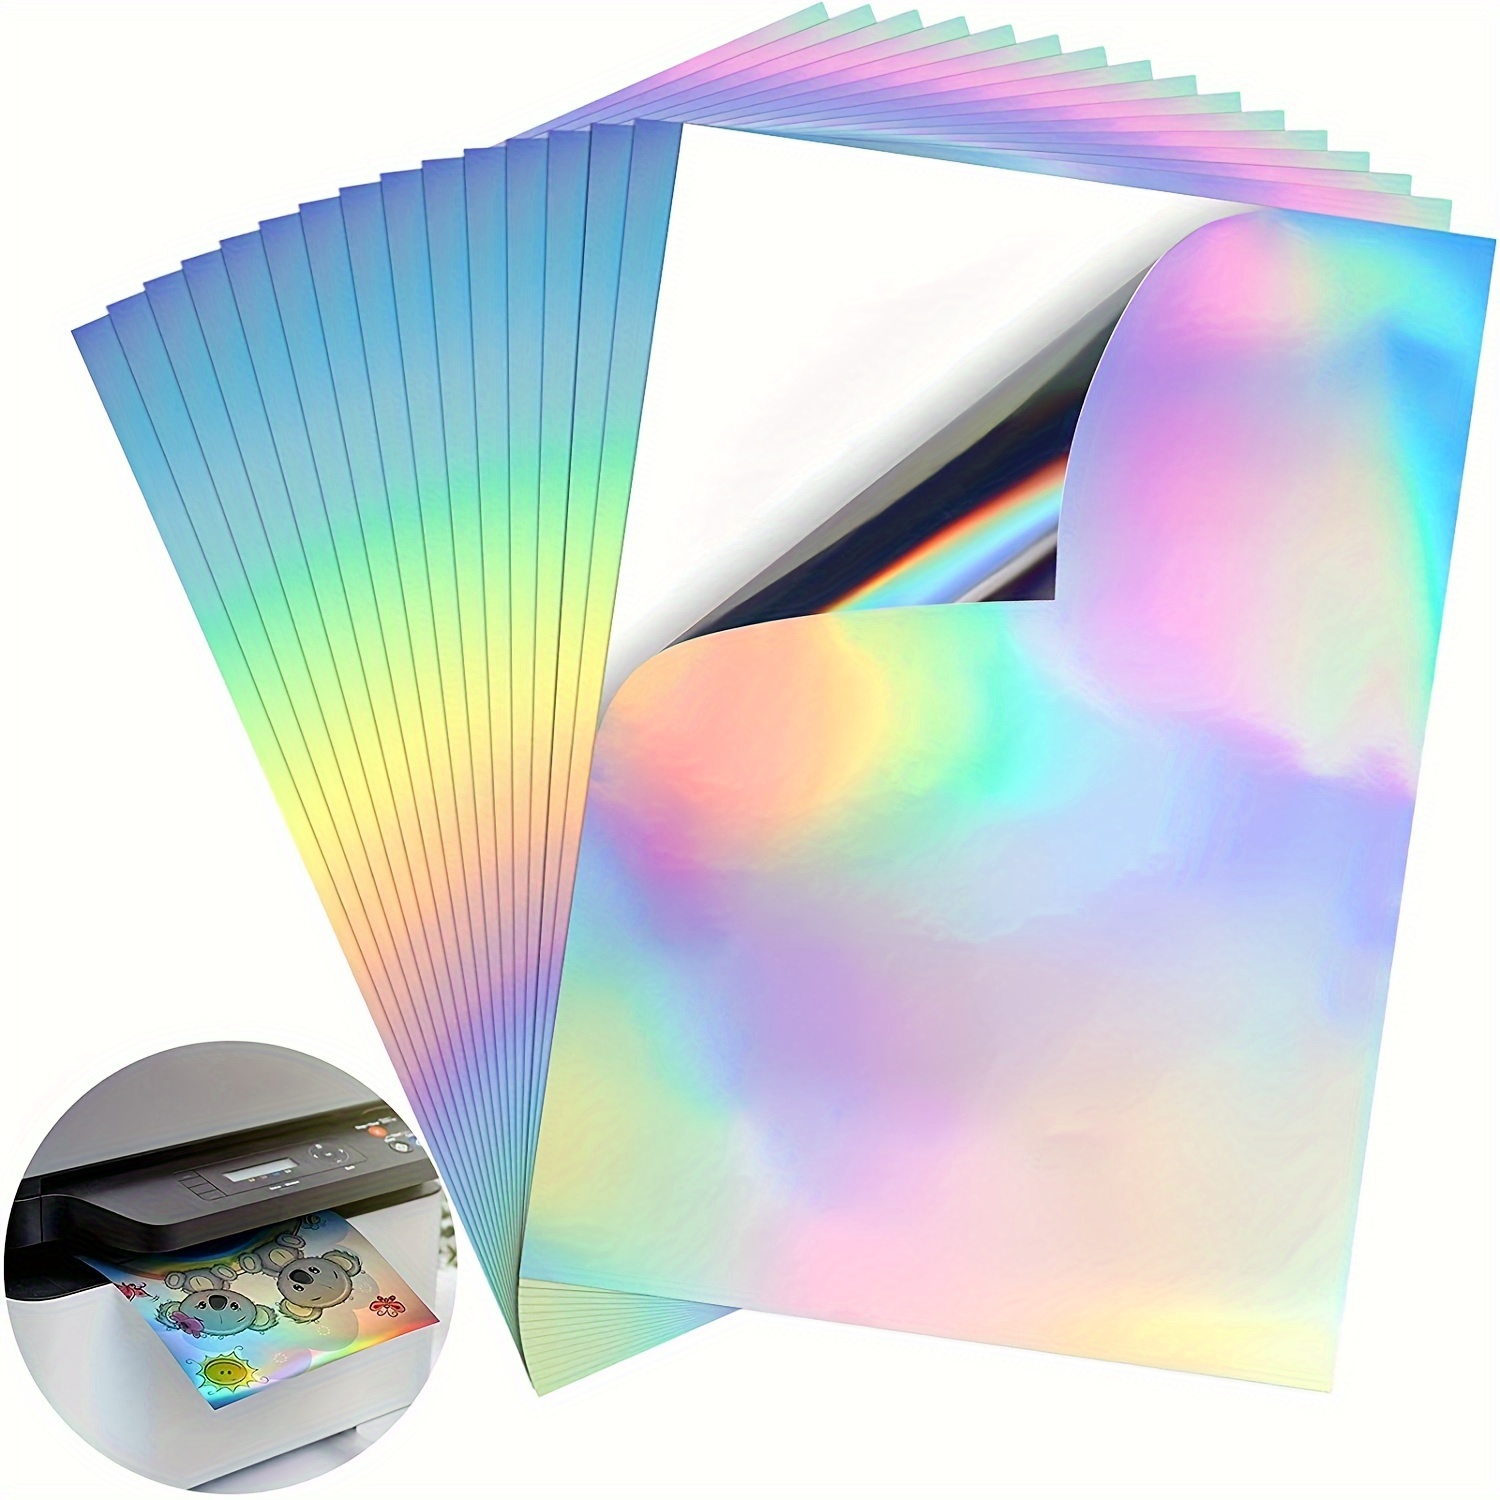 Koala Star Holographic Sticker Paper for Inkjet Printer 8.5x11